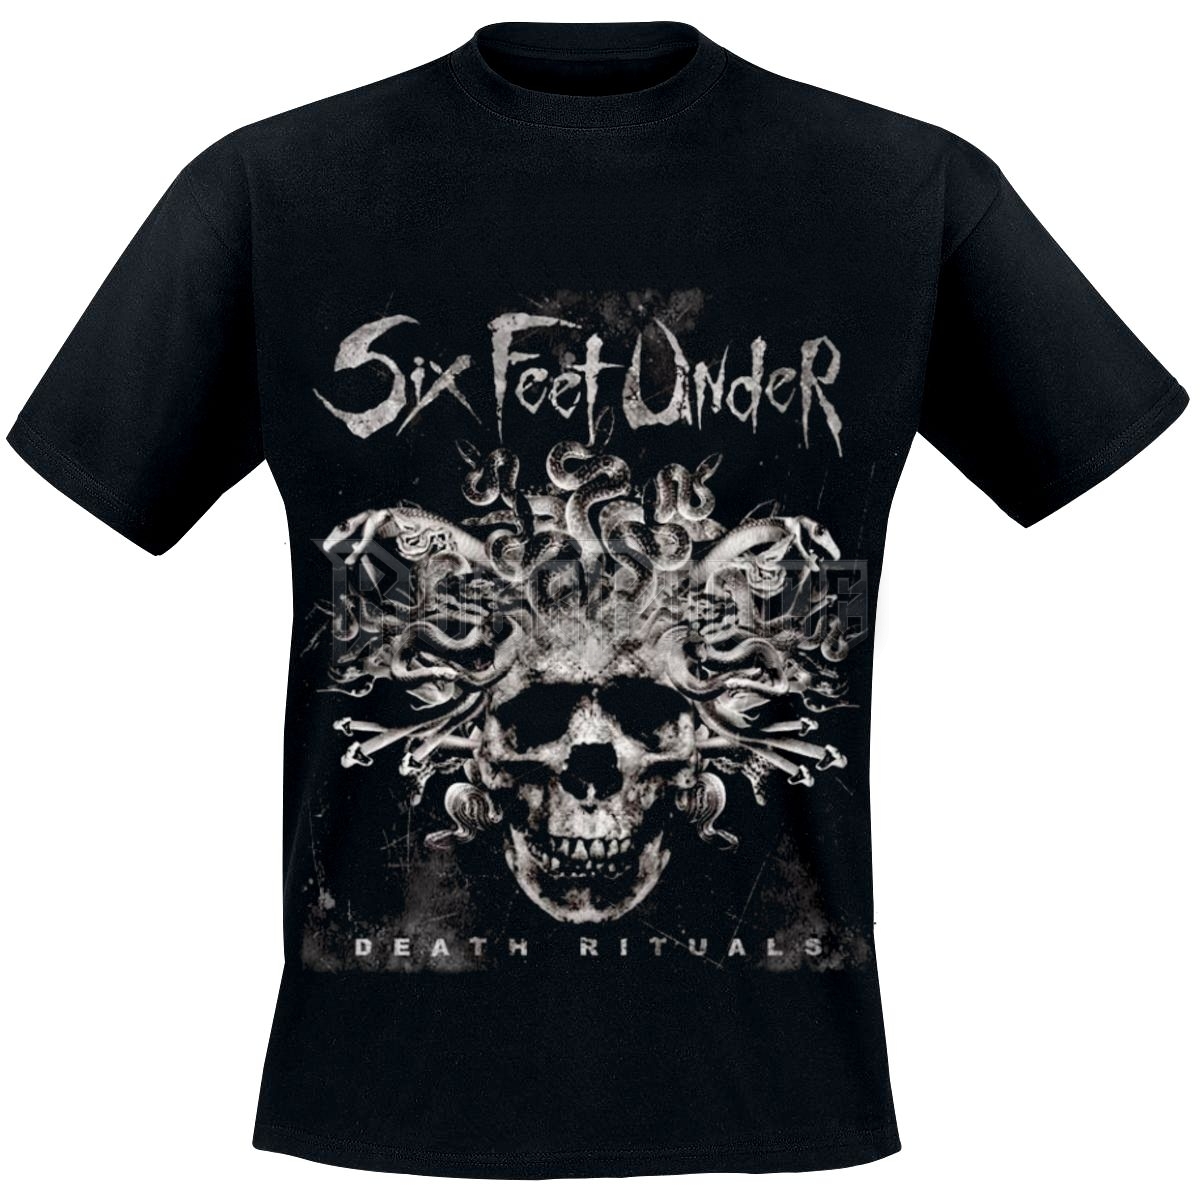 Six Feet Under - Death Rituals - 1476 - UNISEX PÓLÓ